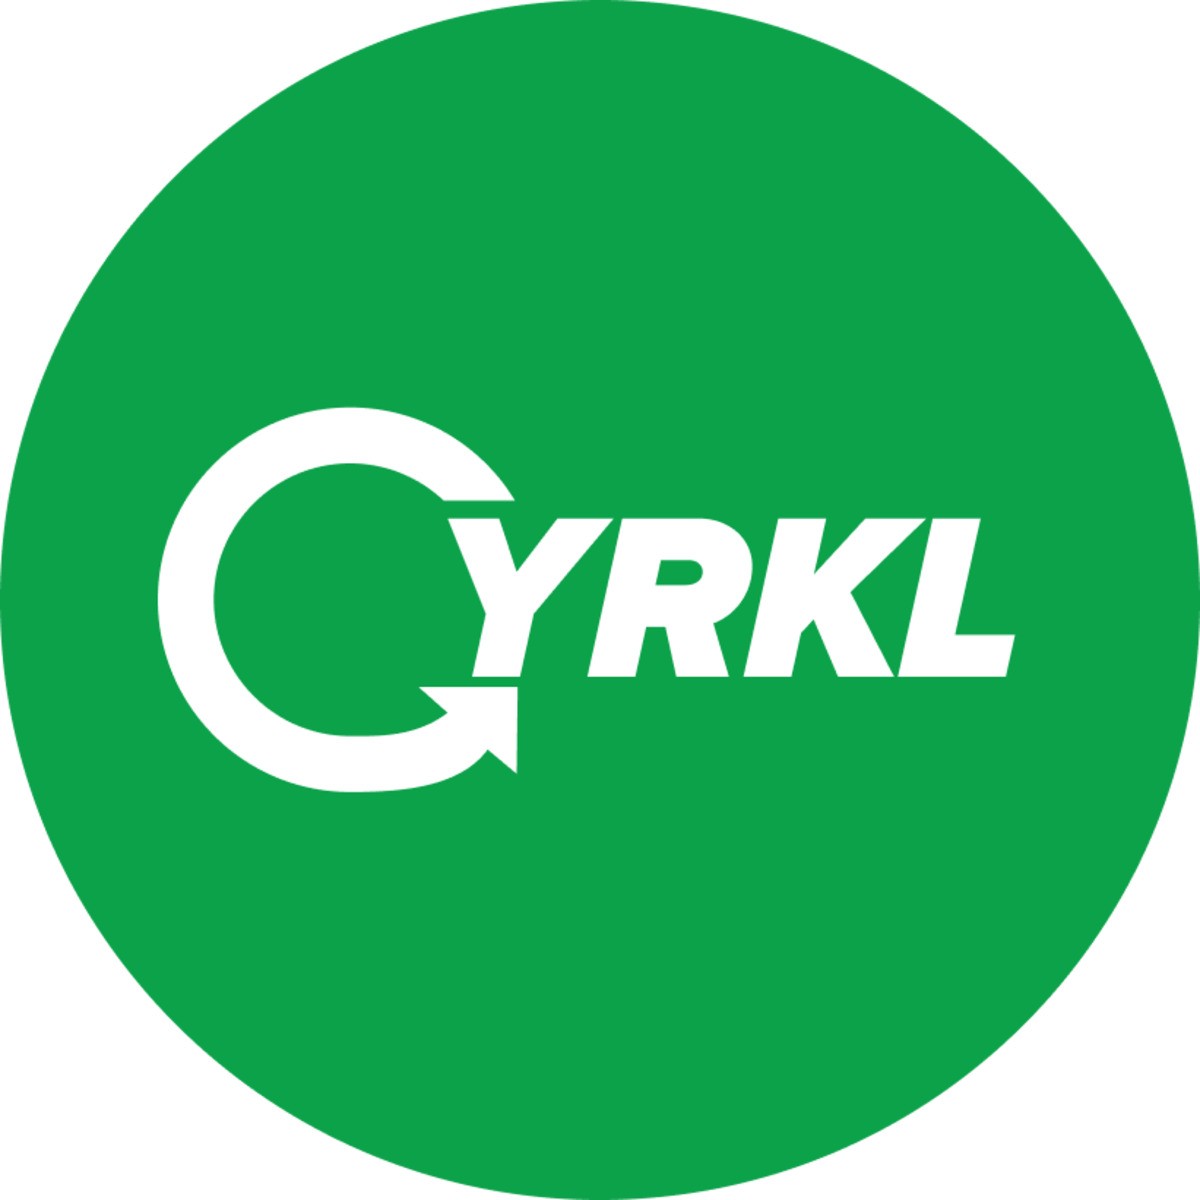 CYRKL Zdrojova platforma, s.r.o.